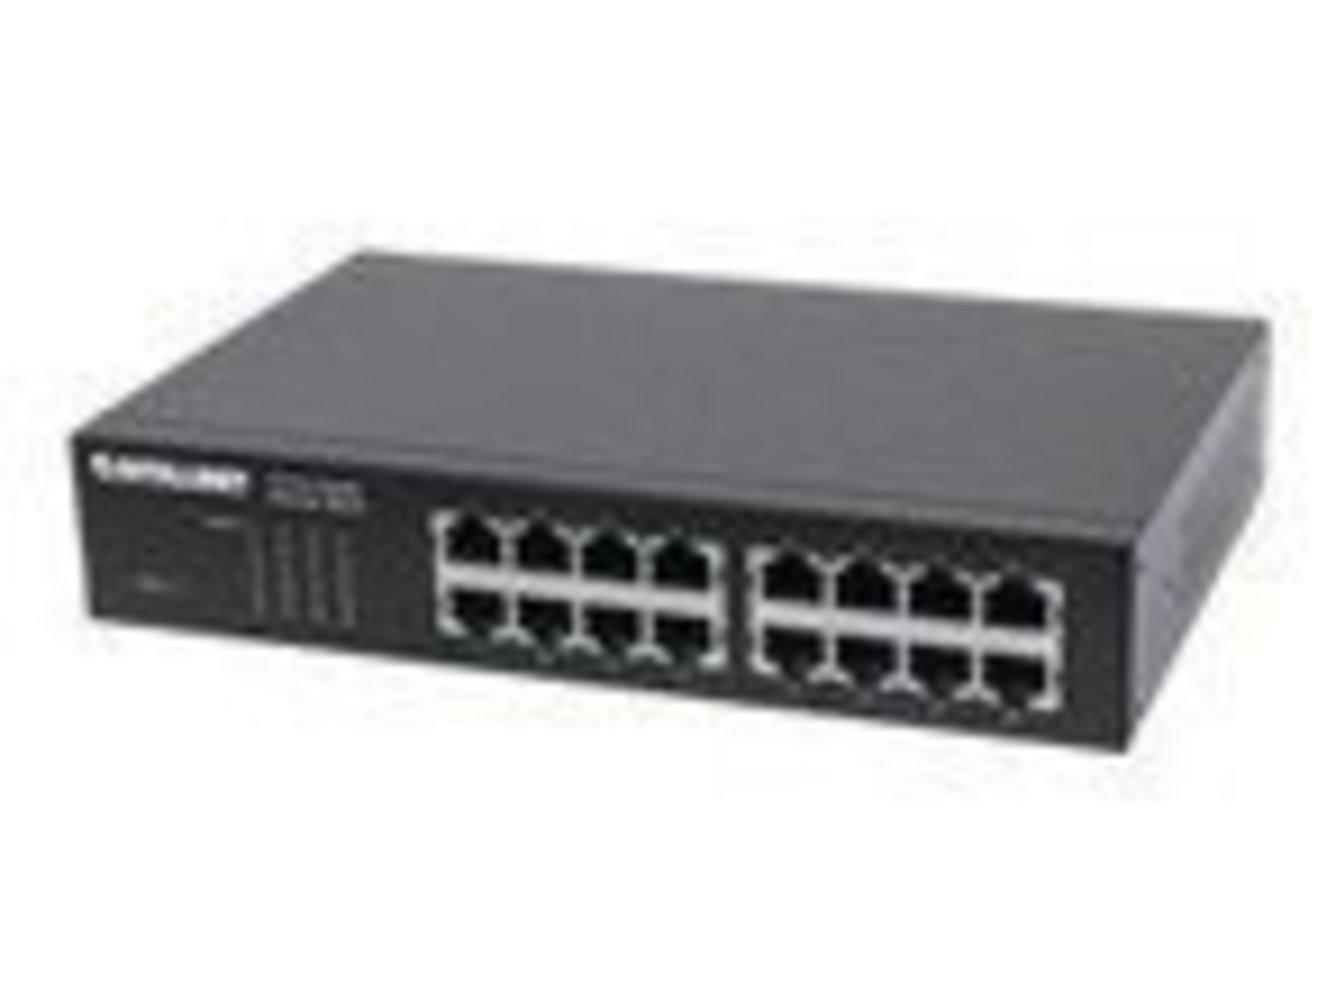 INTELLINET 16-Port Gigabit Ethernet Switch RJ45 10/100/1000 Mbps Desktop 19 zoll Rackmount